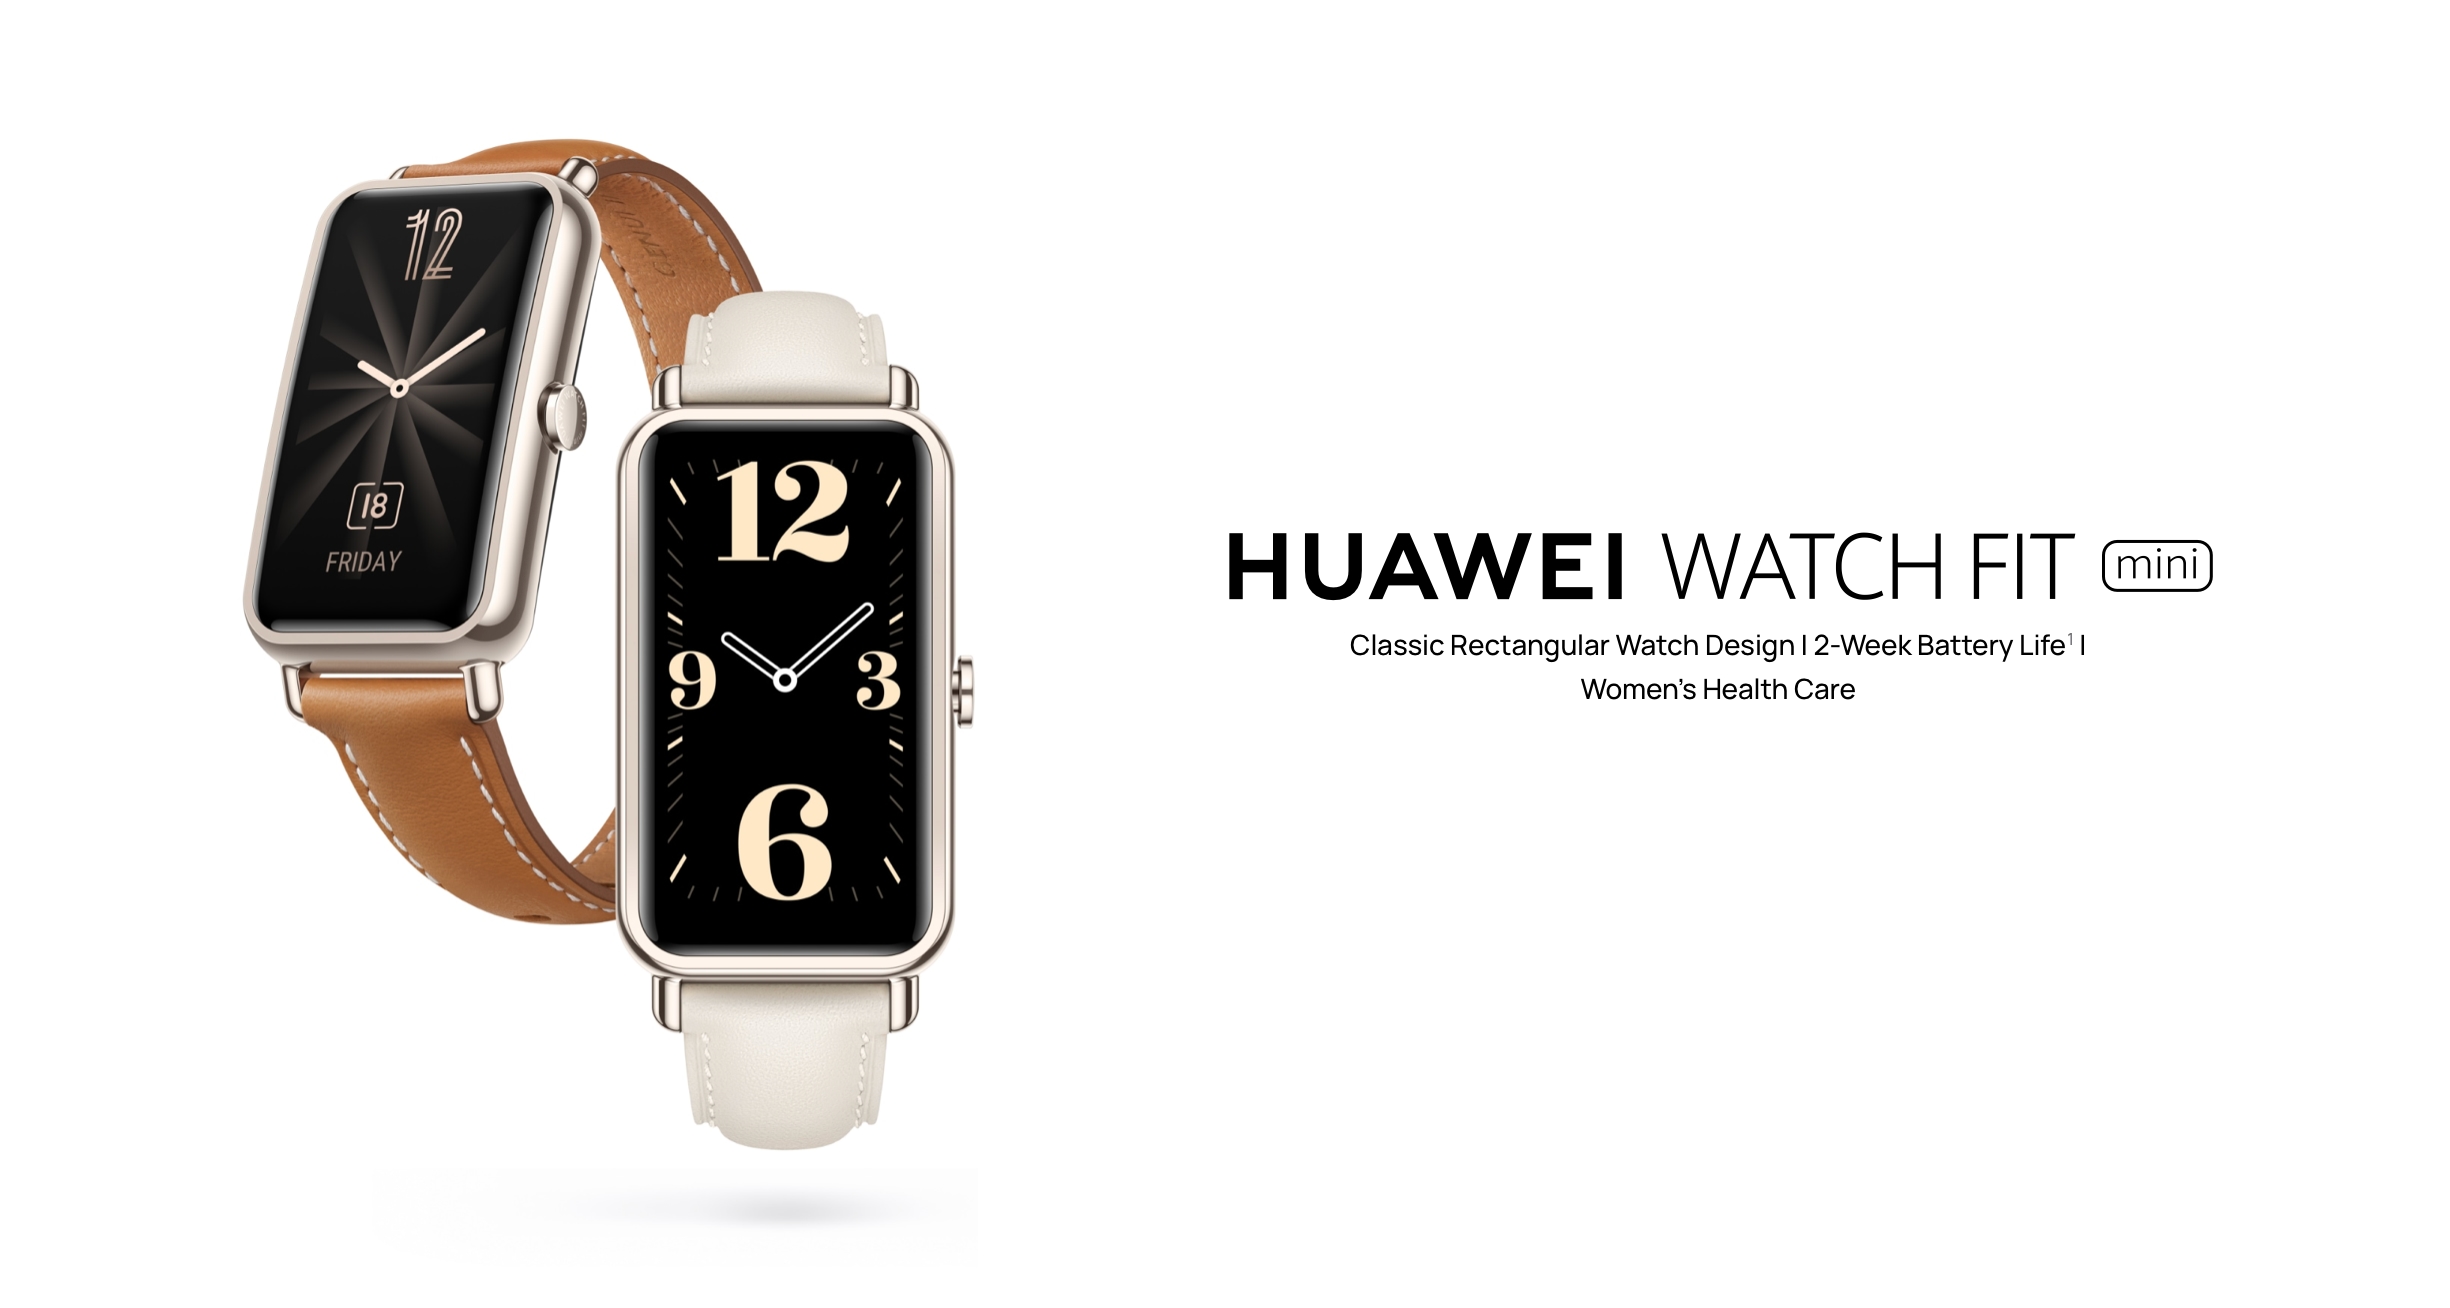 Huawei Watch Fit Mini braccialetto intelligente con schermo AMOLED, sensore SpO2 e durata della batteria fino a 14 giorni lanciato in Europa